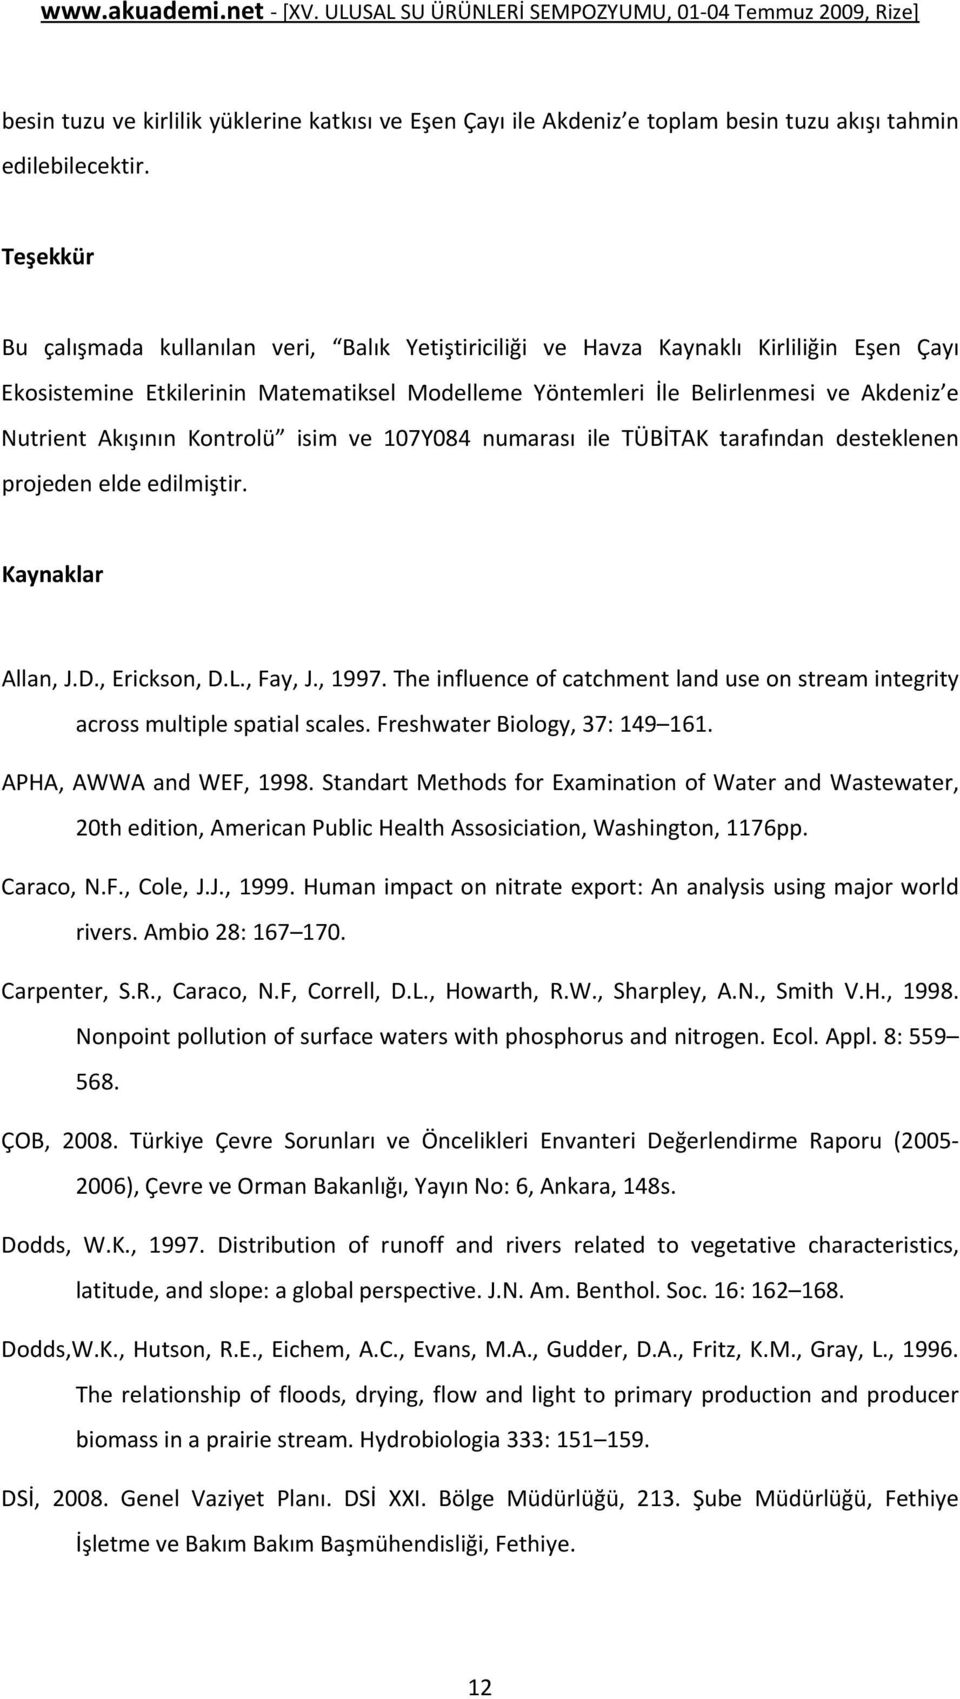 Akışının Kontrolü isim ve 107Y084 numarası ile TÜBİTAK tarafından desteklenen projeden elde edilmiştir. Kaynaklar Allan, J.D., Erickson, D.L., Fay, J., 1997.